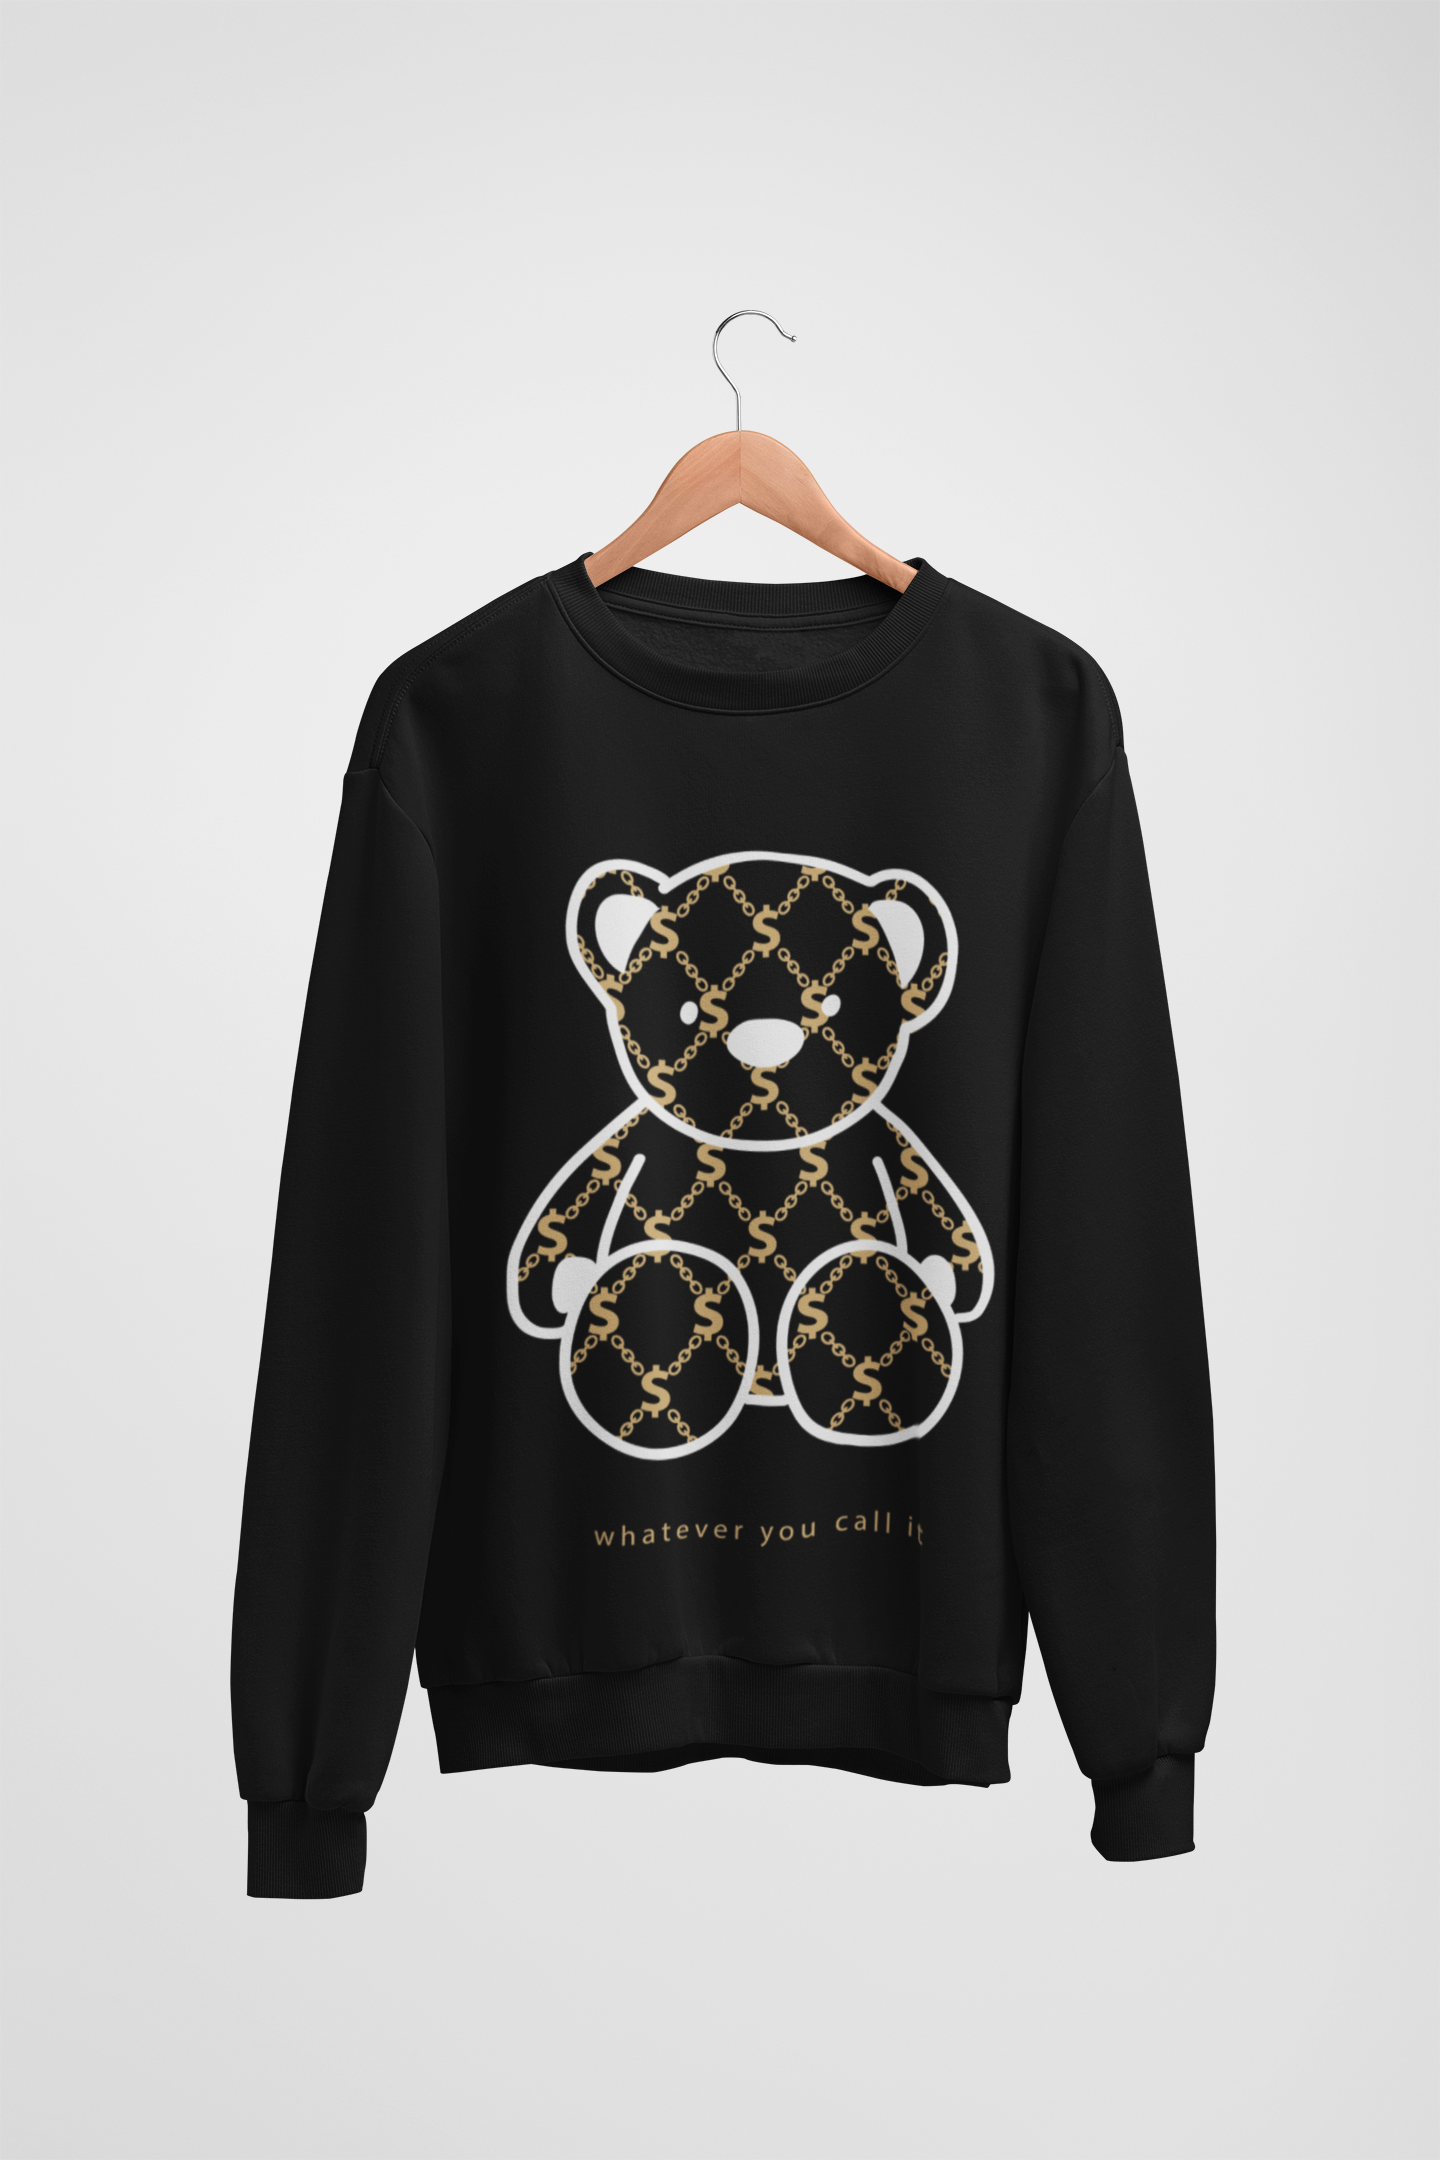 Dollar Sign Teddy Bear Black Sweatshirt For Women